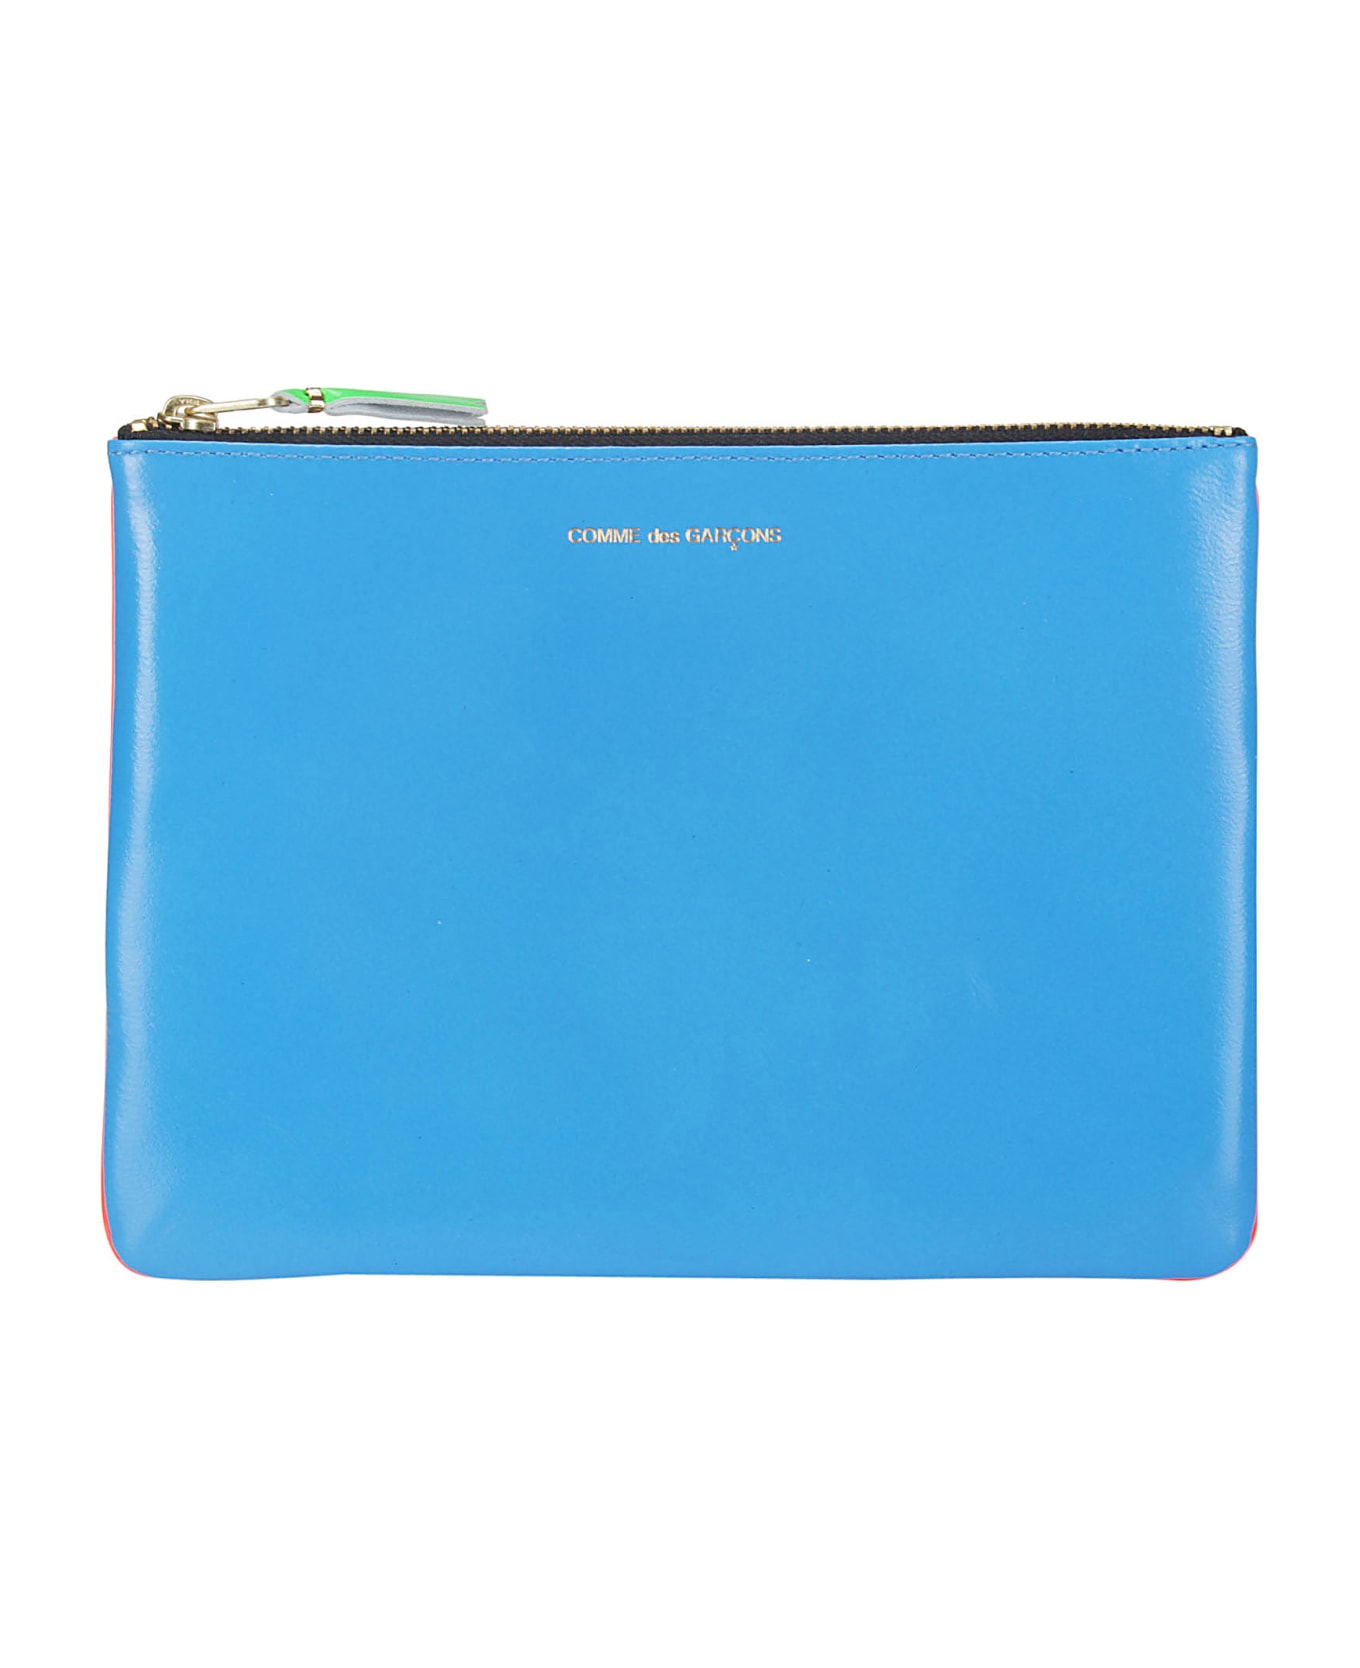 Comme des Garçons Wallet Super Fluo Leather Line - ORANGE/BLUE 財布